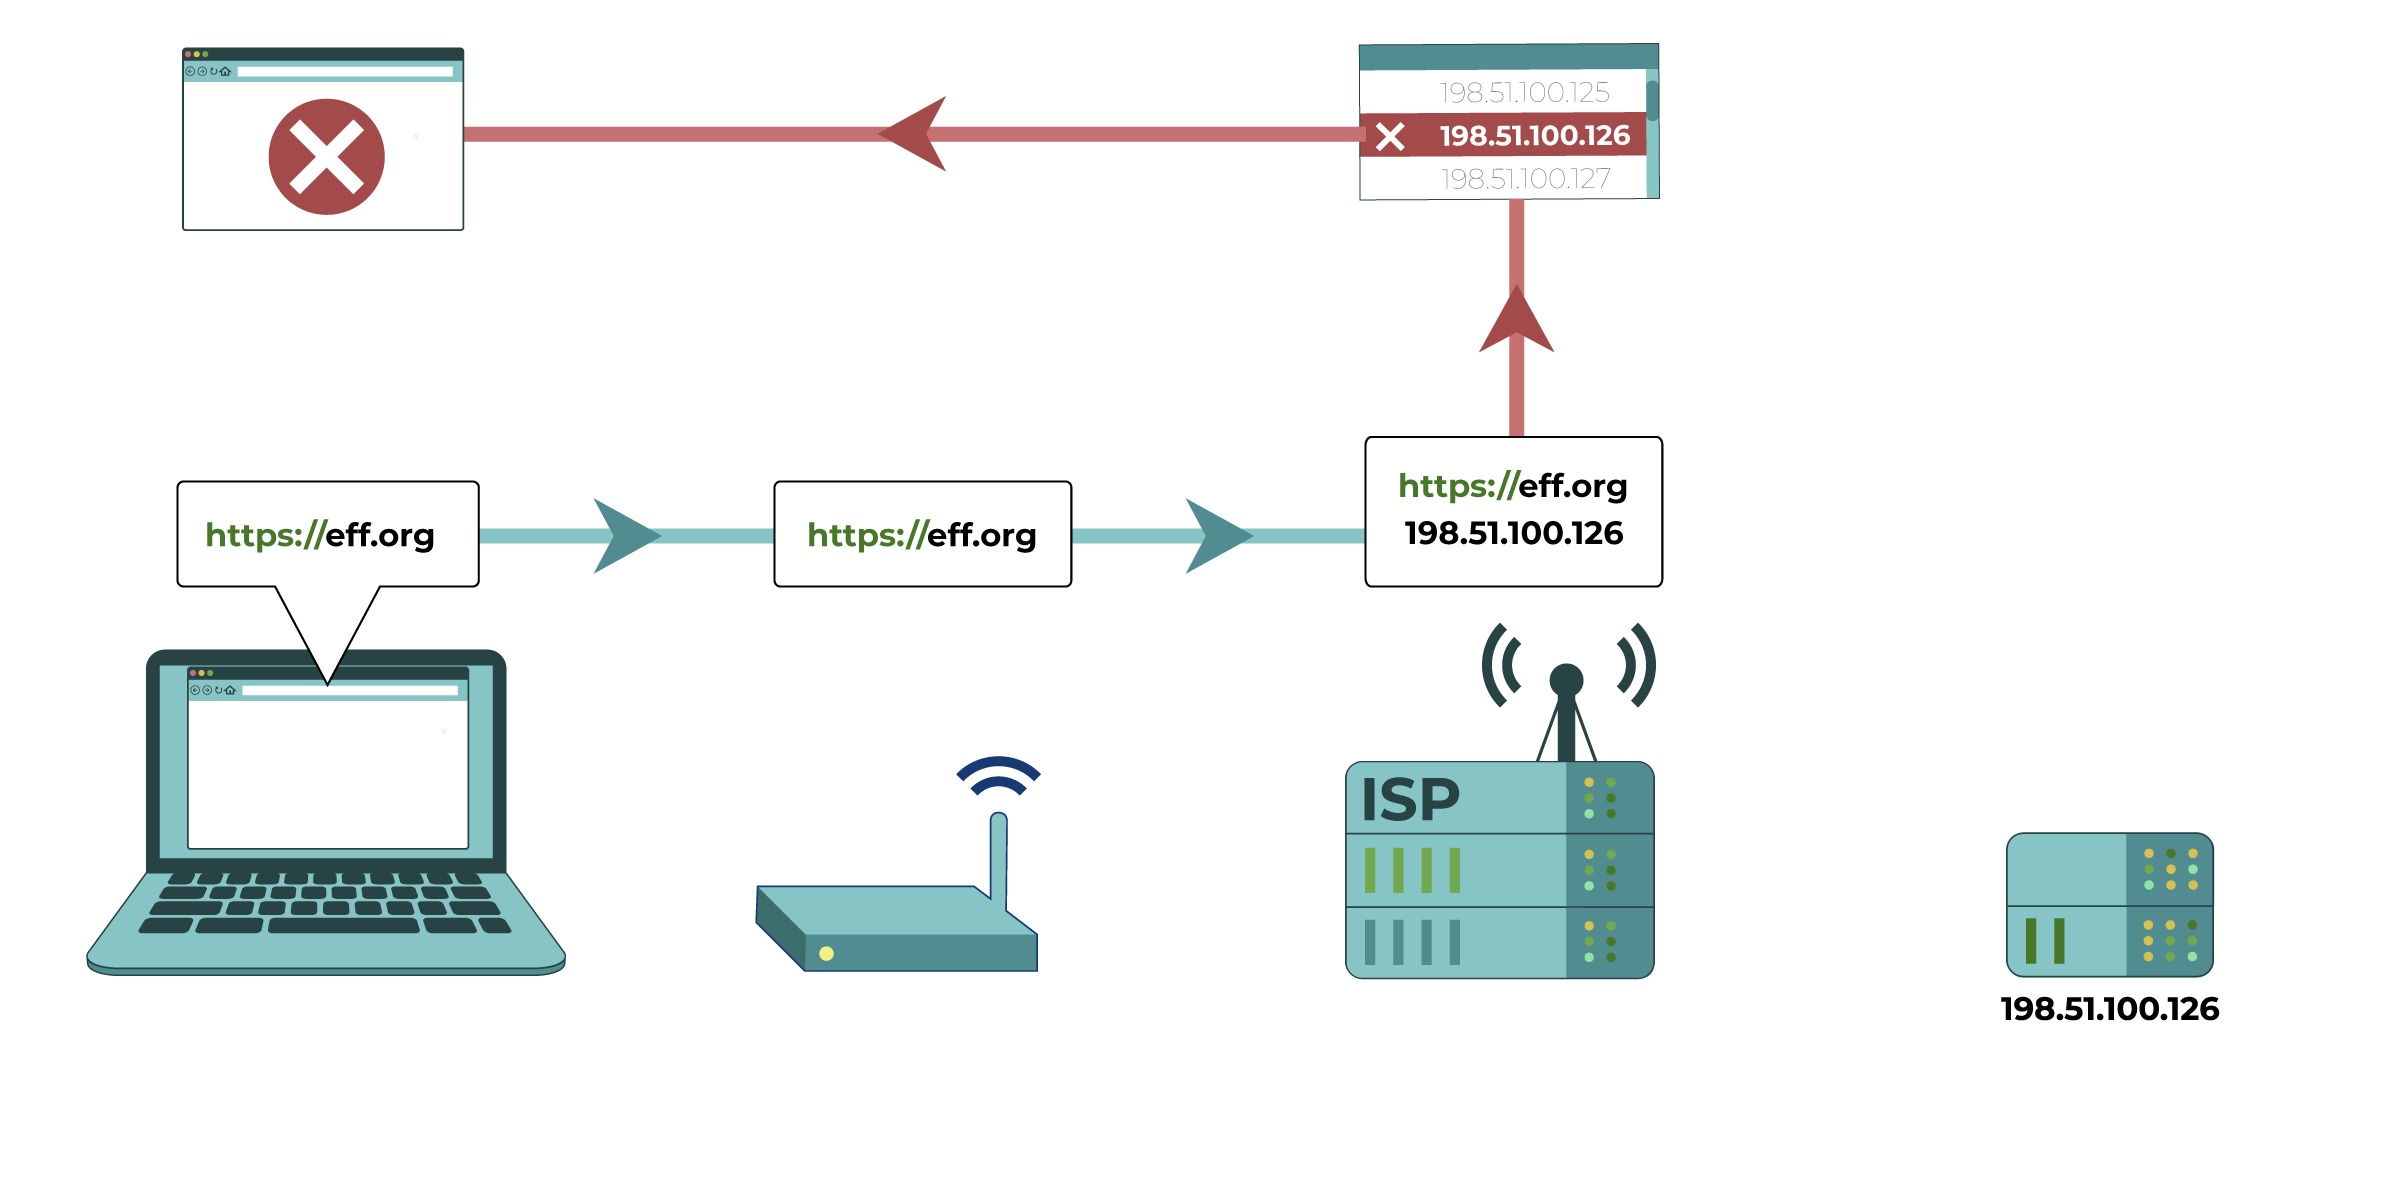 En este diagrama, el proveedor de servicios de Internet coteja la dirección IP solicitada con una lista de direcciones IP bloqueadas. Determina que la dirección IP de eff.org coincide con la de una dirección IP bloqueada, y bloquea la solicitud al sitio web.